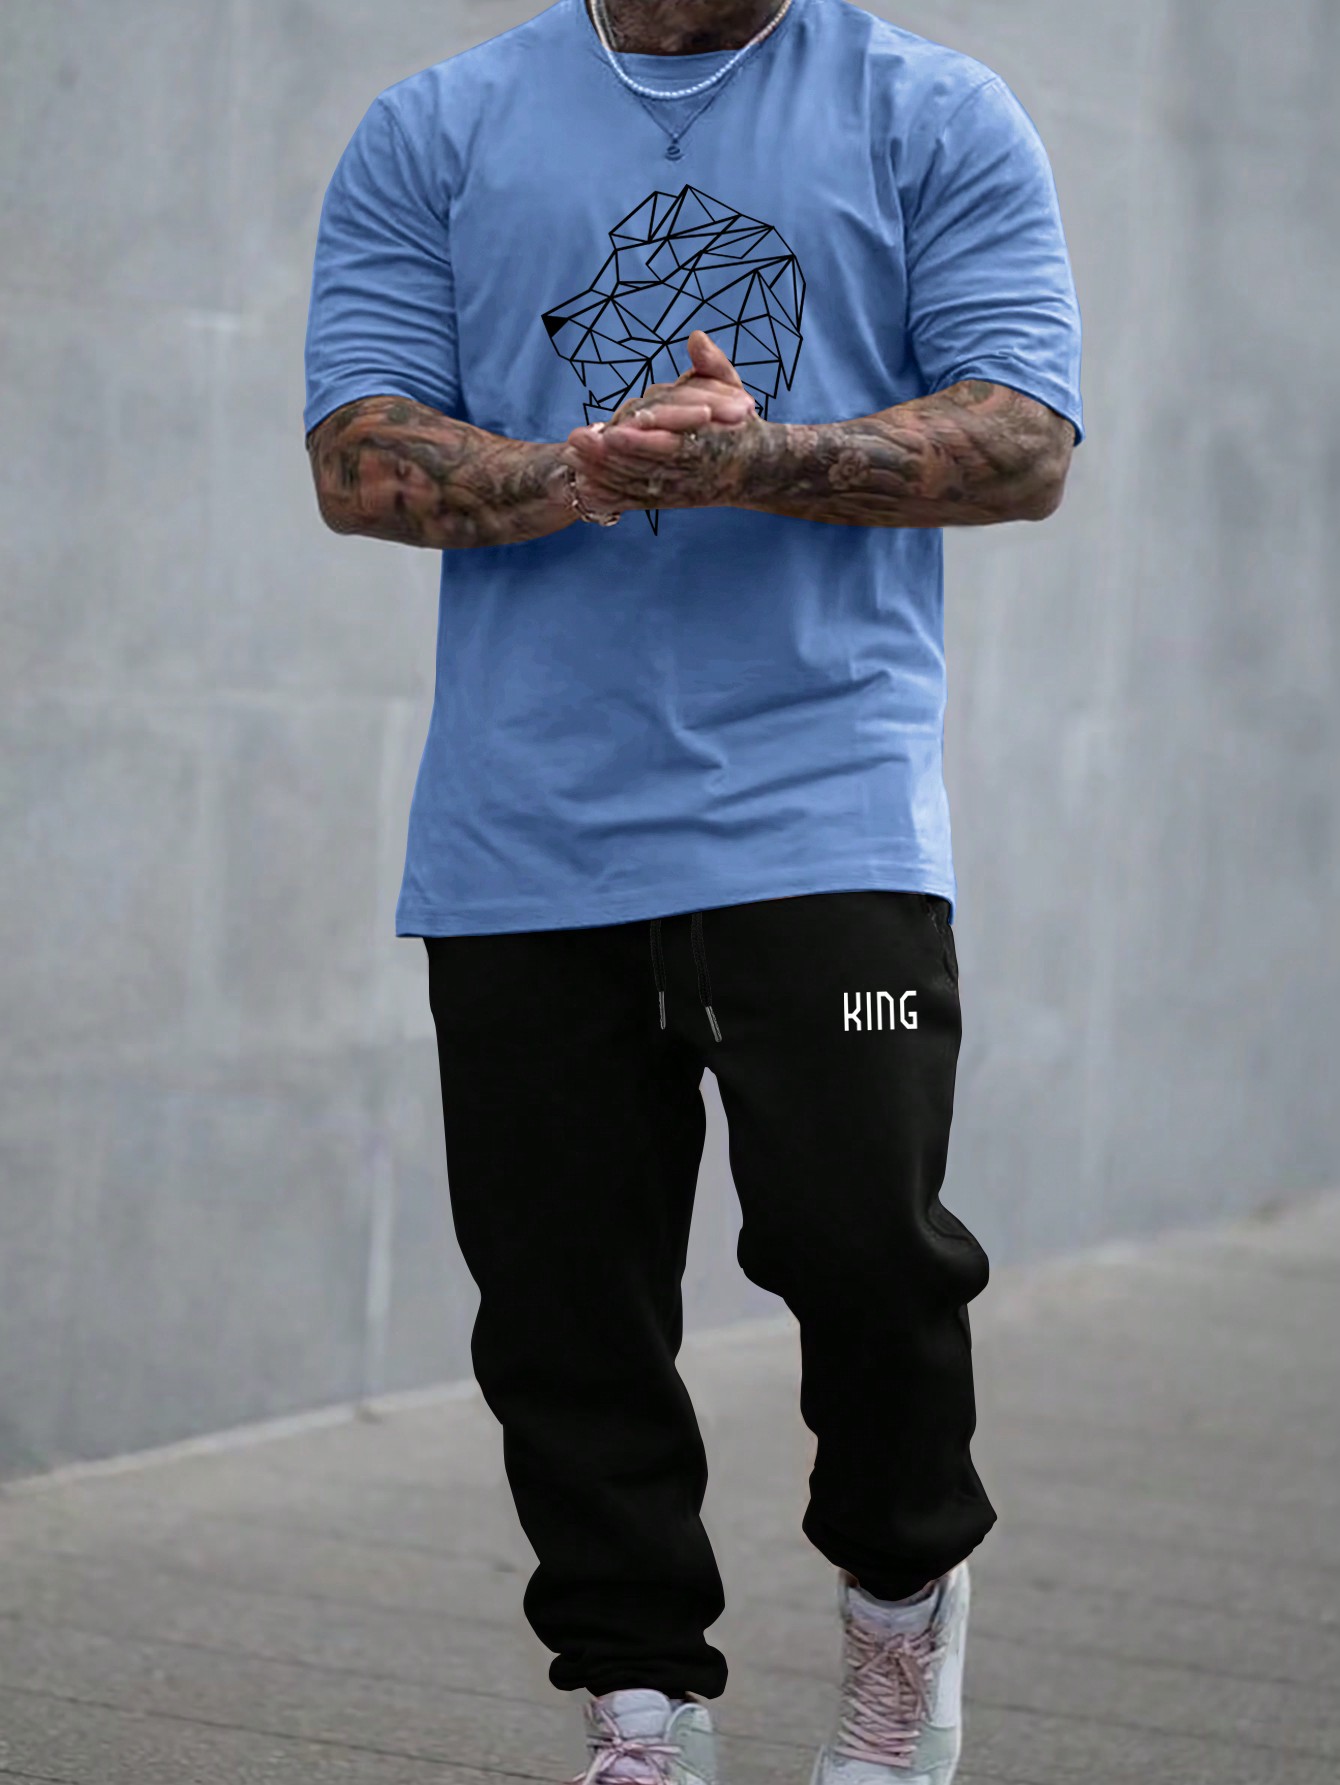 Мужская футболка с короткими рукавами с принтом льва и принтом алфавита Manfinity LEGND, синий мужская футболка с короткими рукавами и принтом масляной живописи manfinity legnd черный